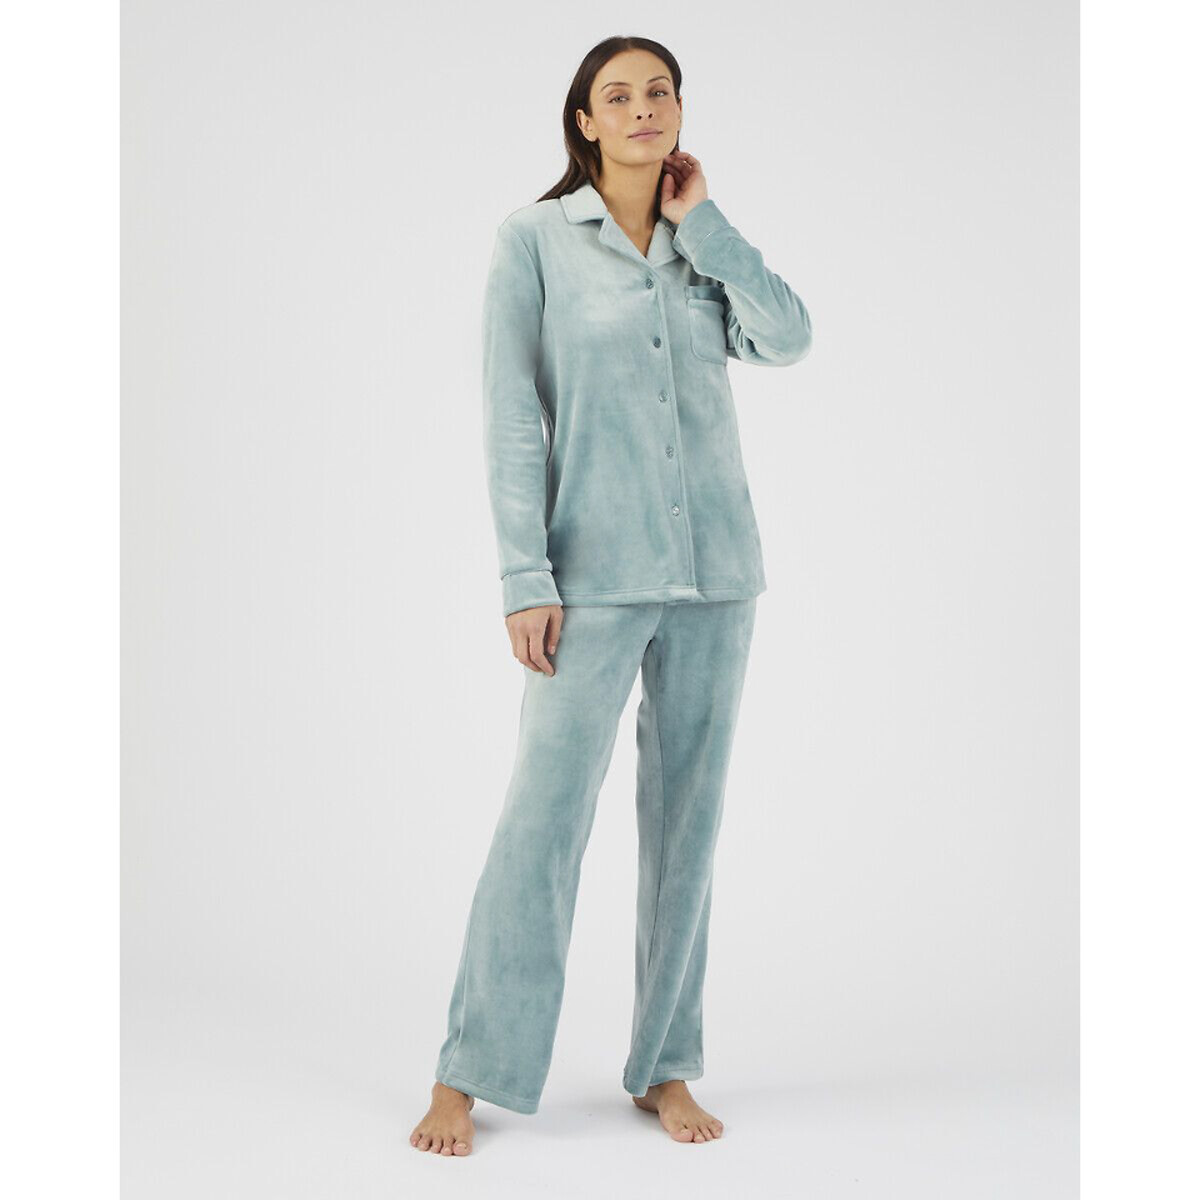 Комплект пижамный из термолактила La Redoute XS синий комплект пижамный thermolactyl la redoute l серый